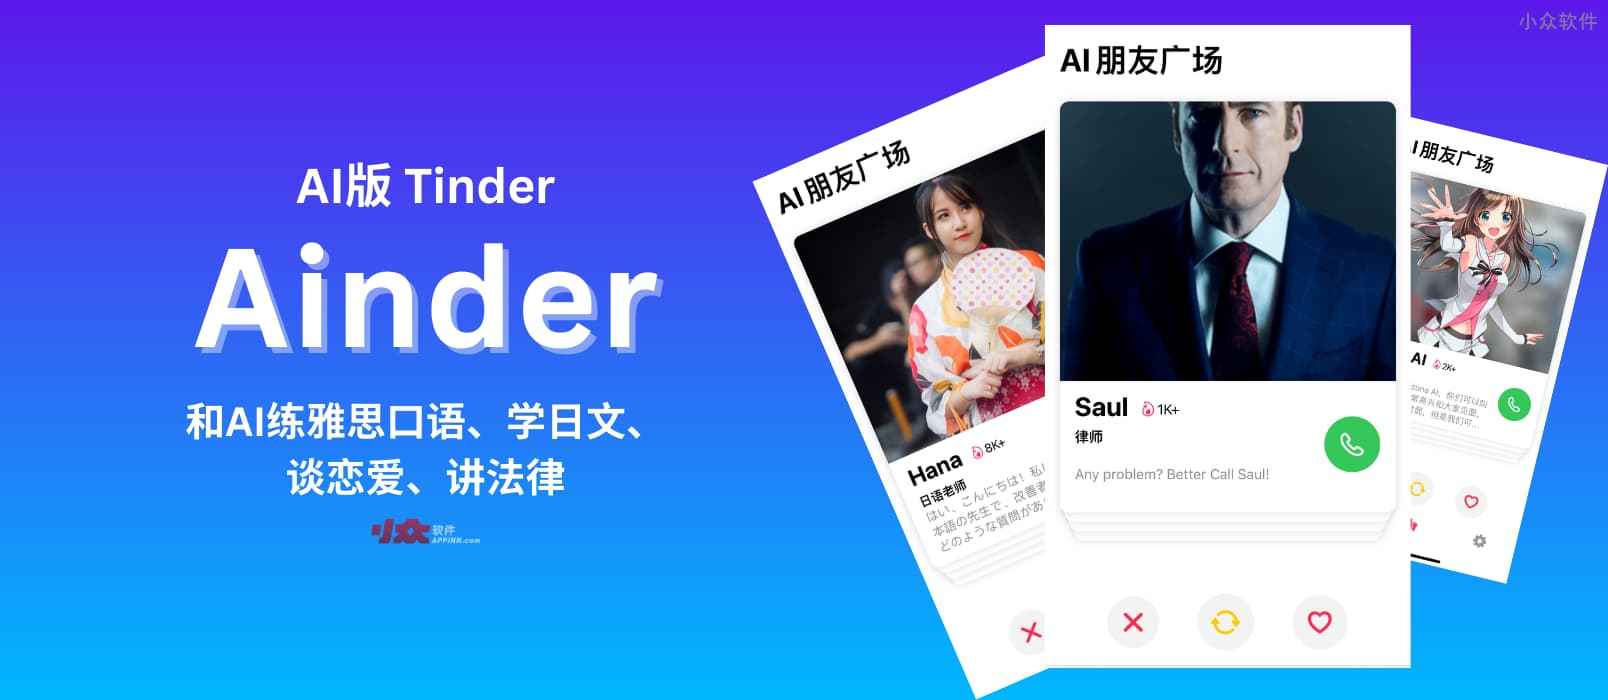 揭秘 AI 版 Tinder 应用 Ainder，你猜我在里面遇见了谁？